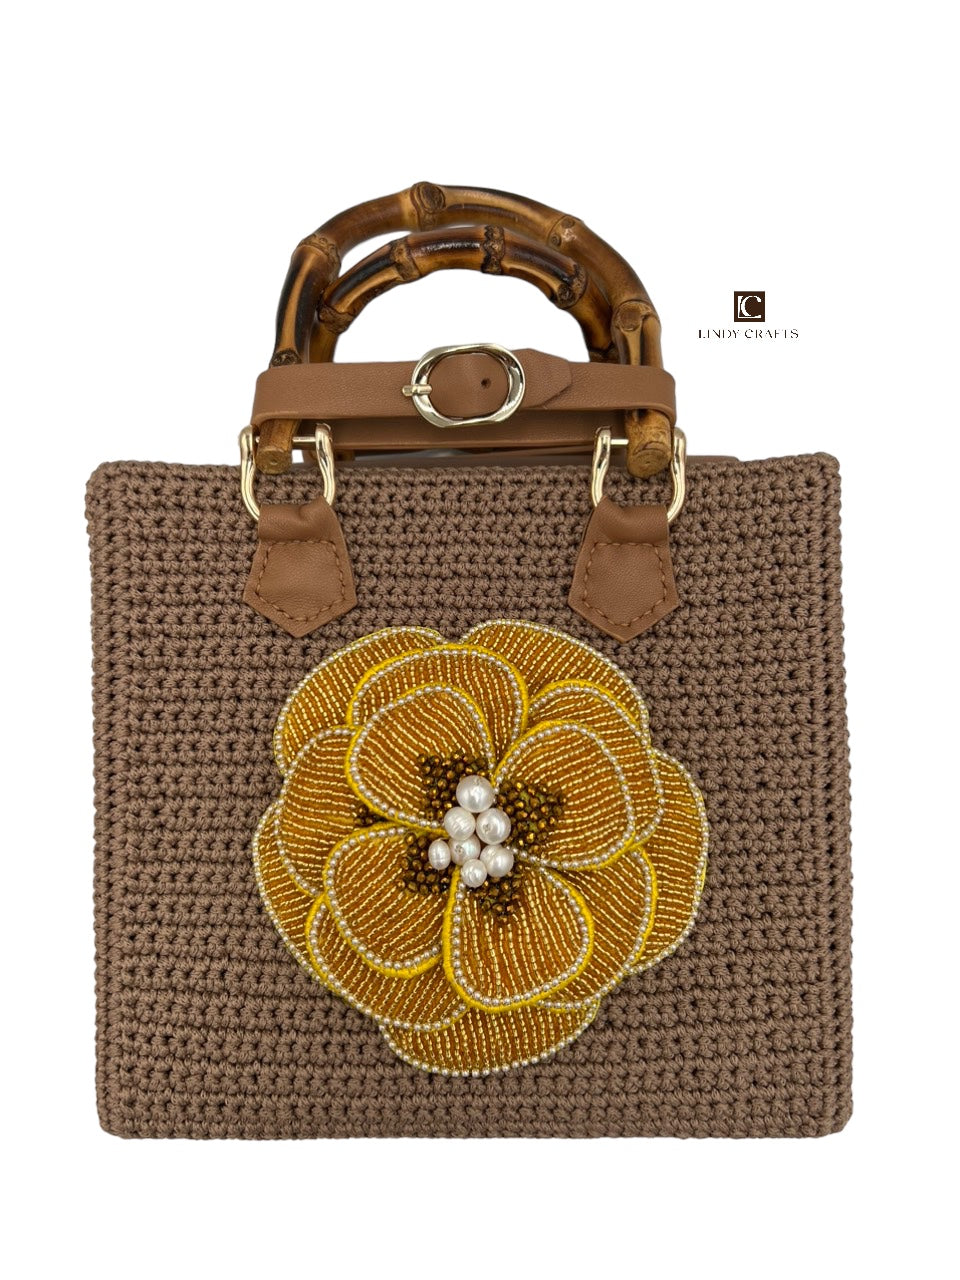 Crochet Blossom Bag - Made to order